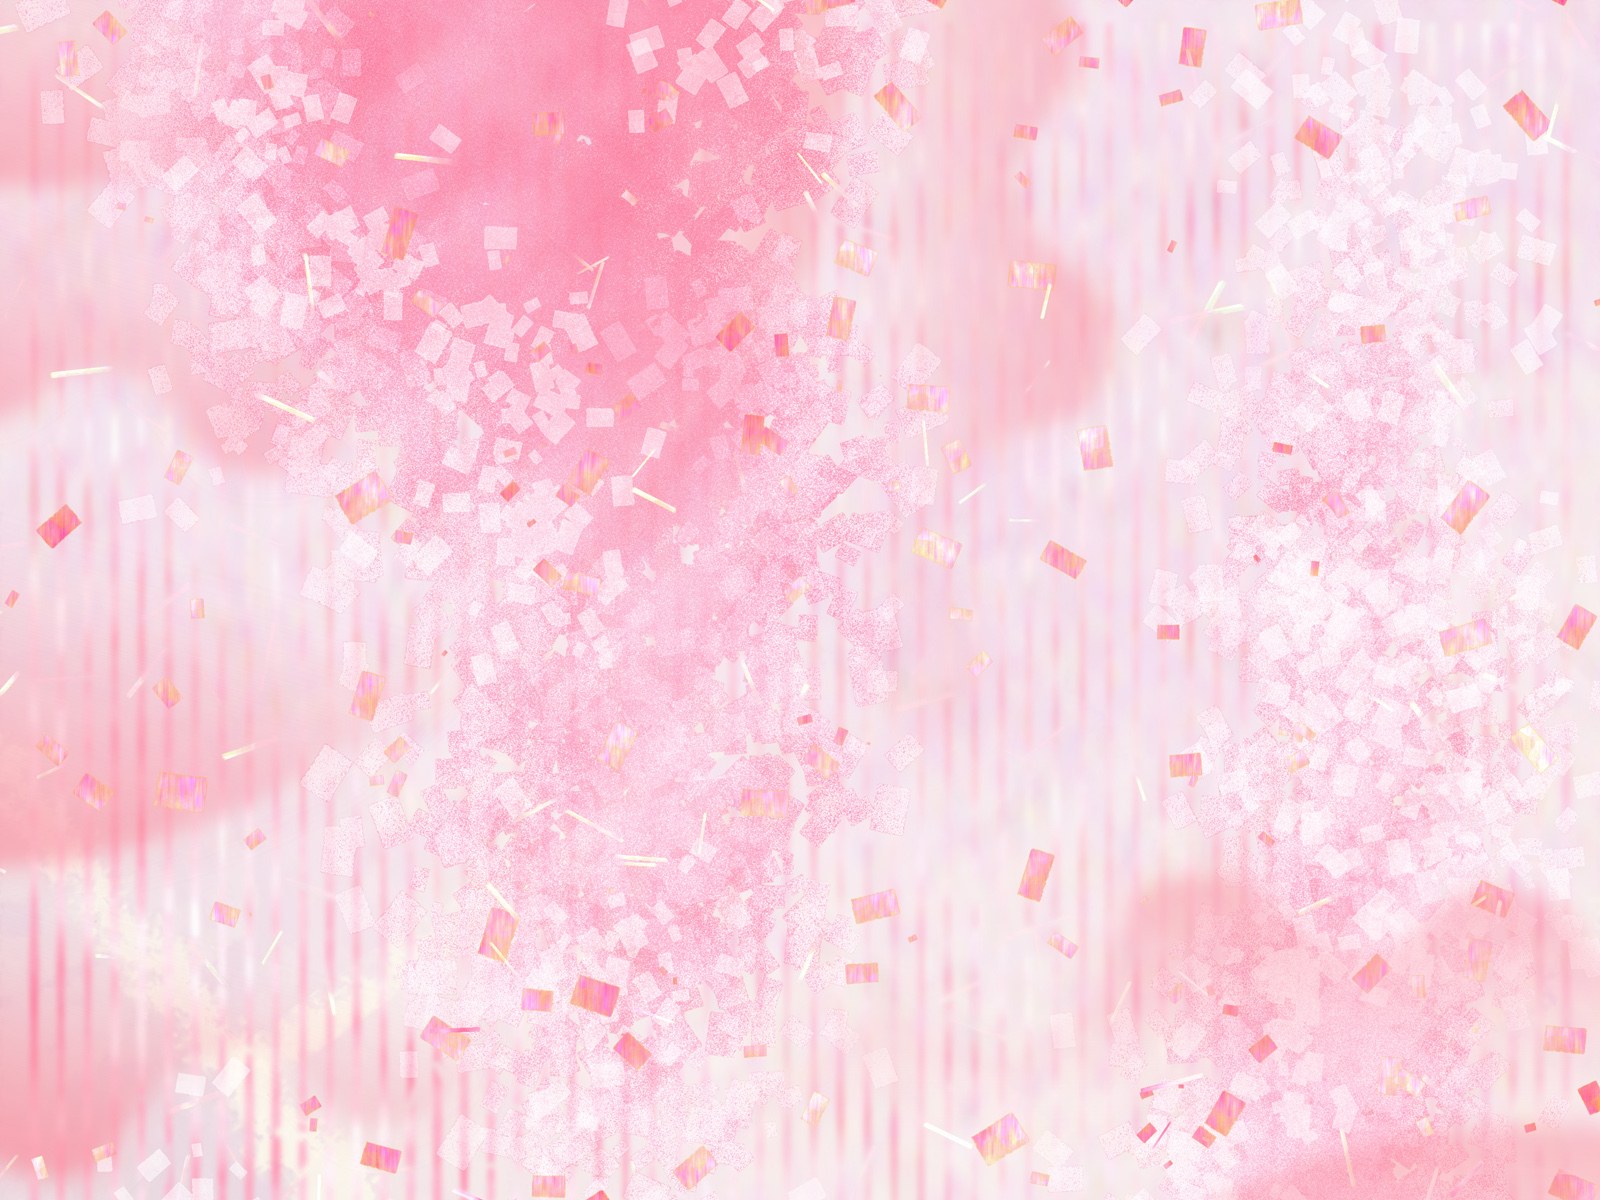 壁纸1600x1200 甜美系 碎花花卉图案设计壁纸 美丽碎花布 之 粉红甜美系壁纸 美丽碎花布 之 粉红甜美系图片 美丽碎花布 之 粉红甜美系素材 花卉壁纸 花卉图库 花卉图片素材桌面壁纸